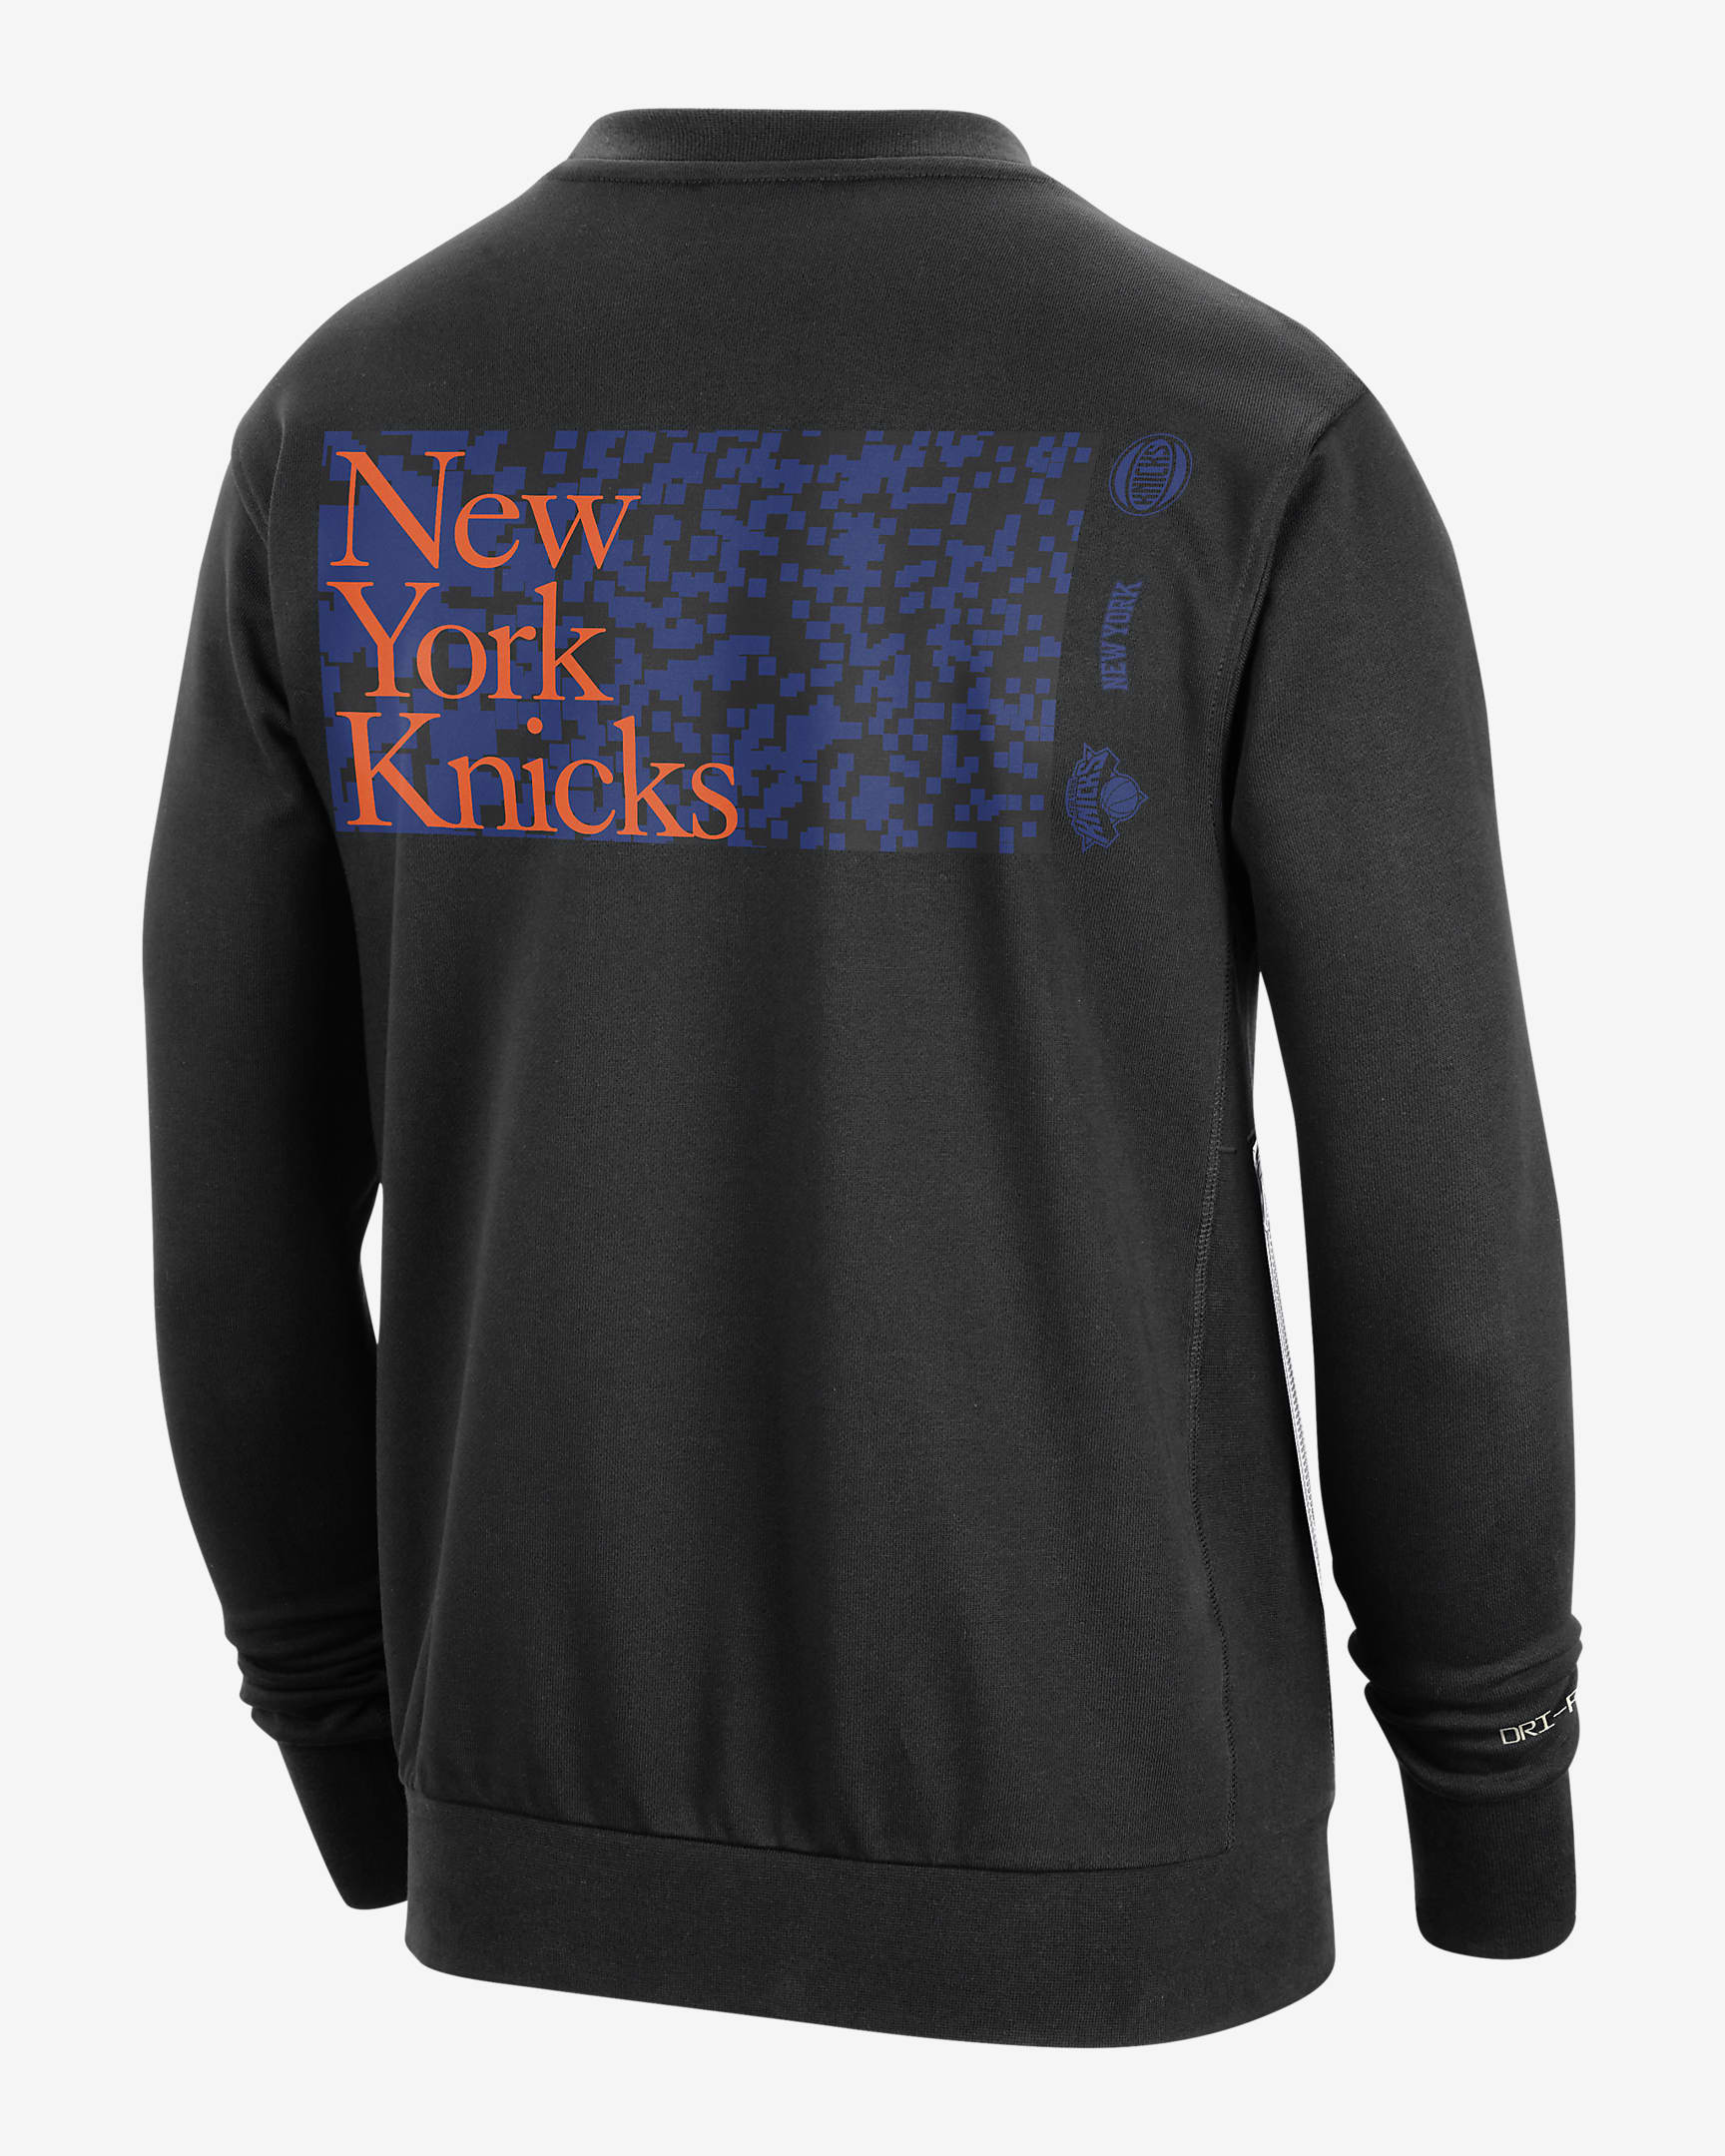 New York Knicks Standard Issue Men's Nike Dri-FIT NBA Crew-Neck ...